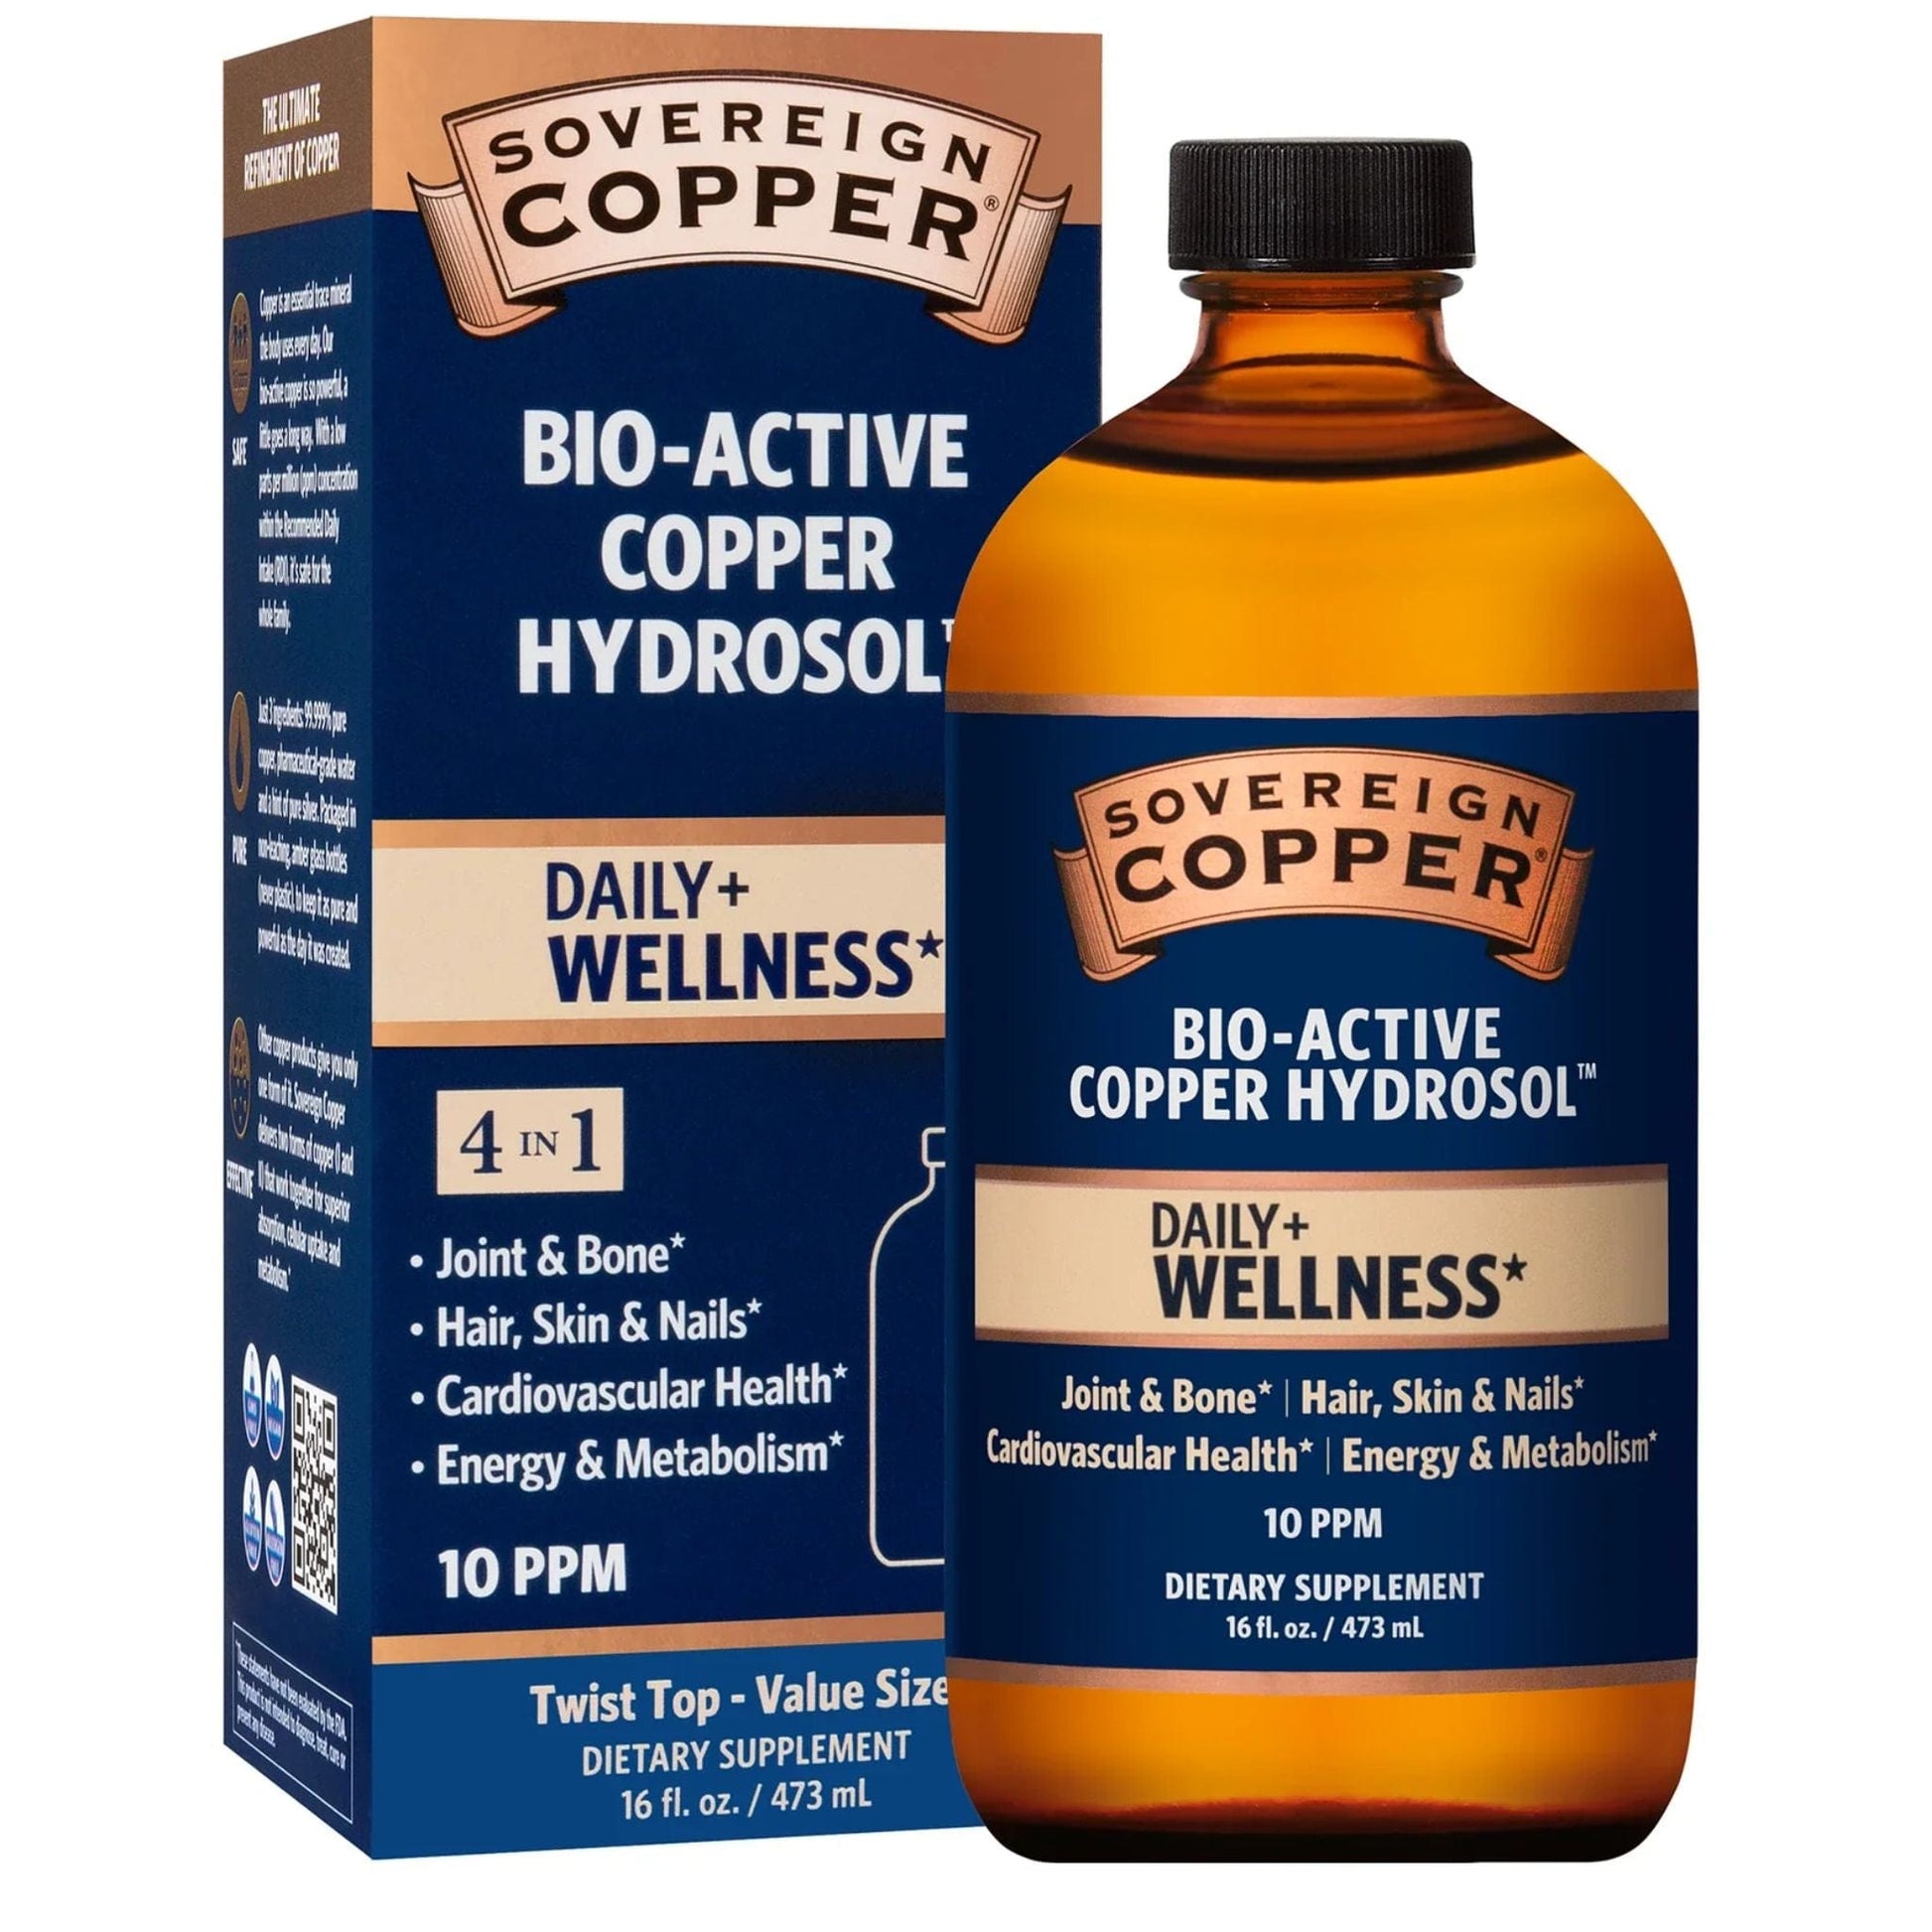 473ml | Sovereign Copper Bio-Active Copper Hydrosol